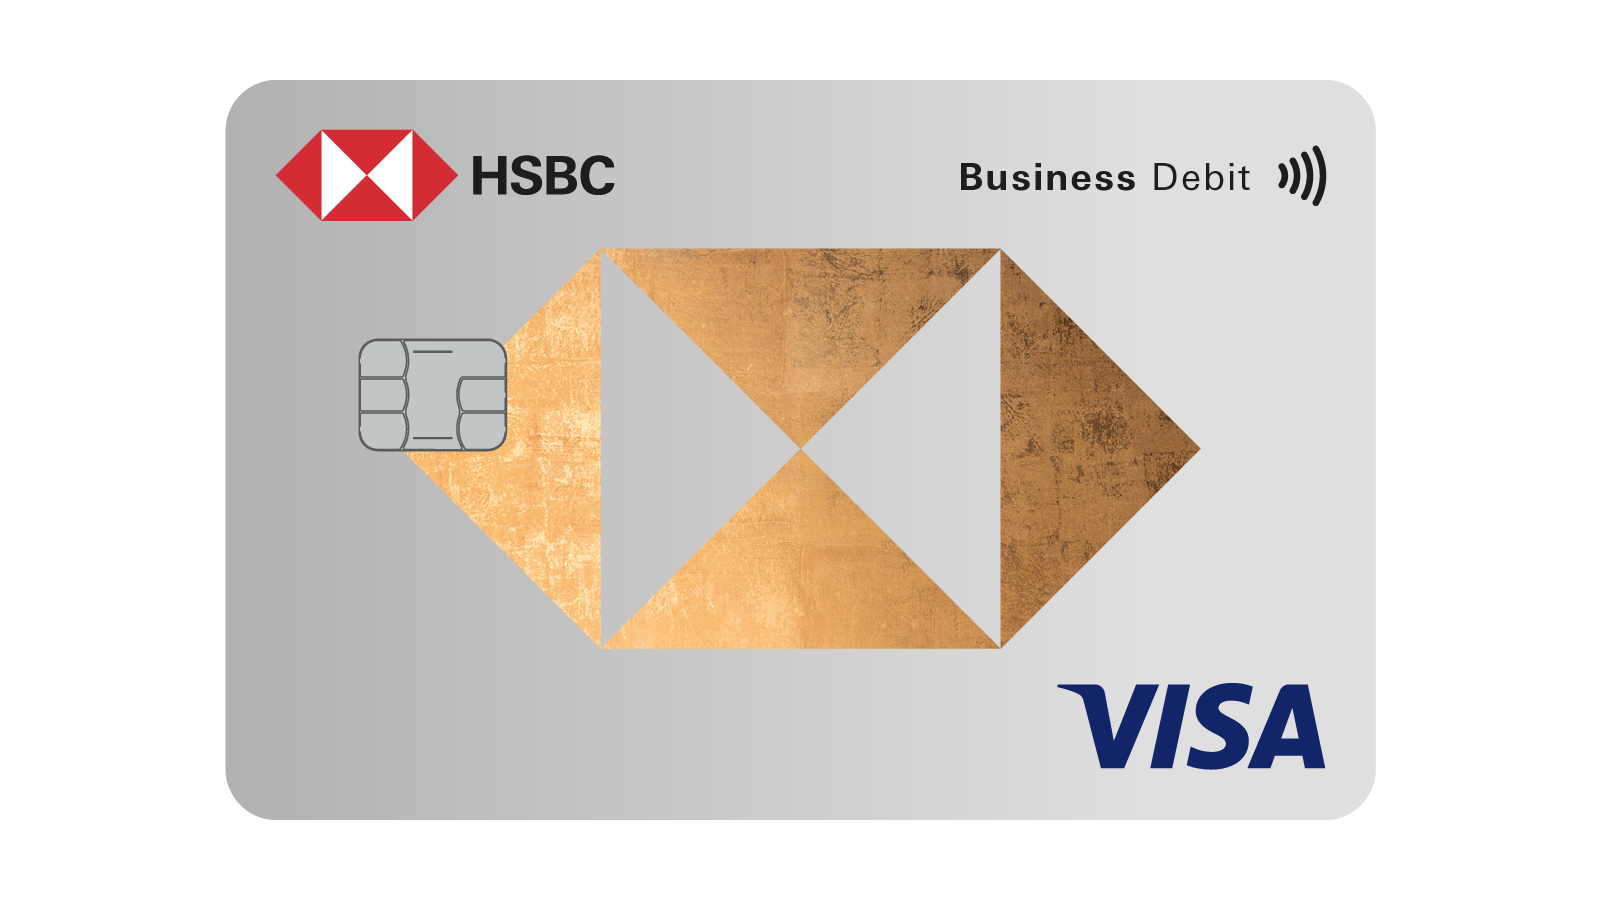 HSBC corporate debit card